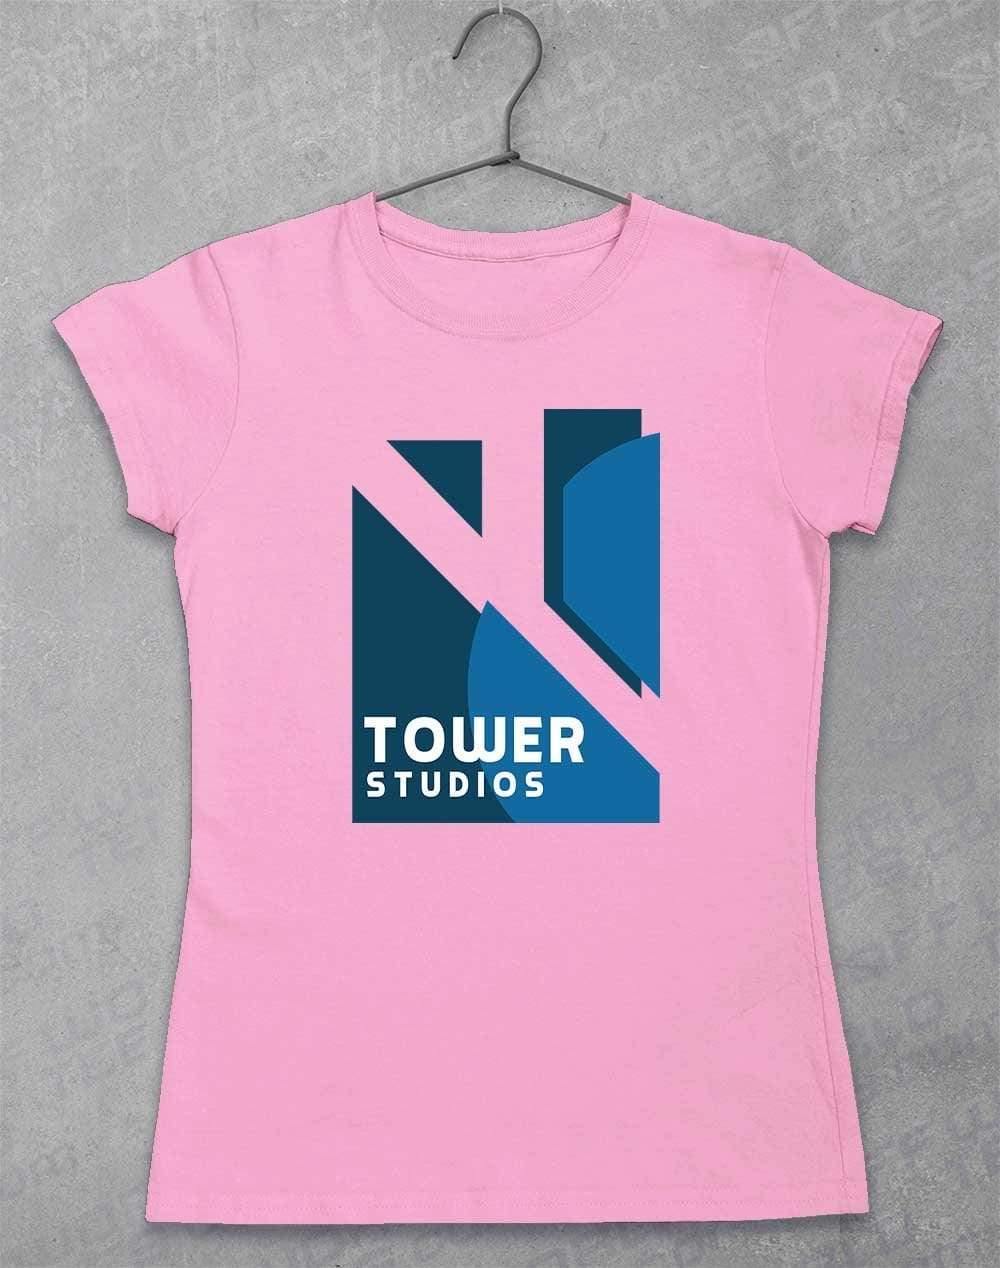 Tower Studios Logo Womens T-Shirt 8-10 / Light Pink  - Off World Tees